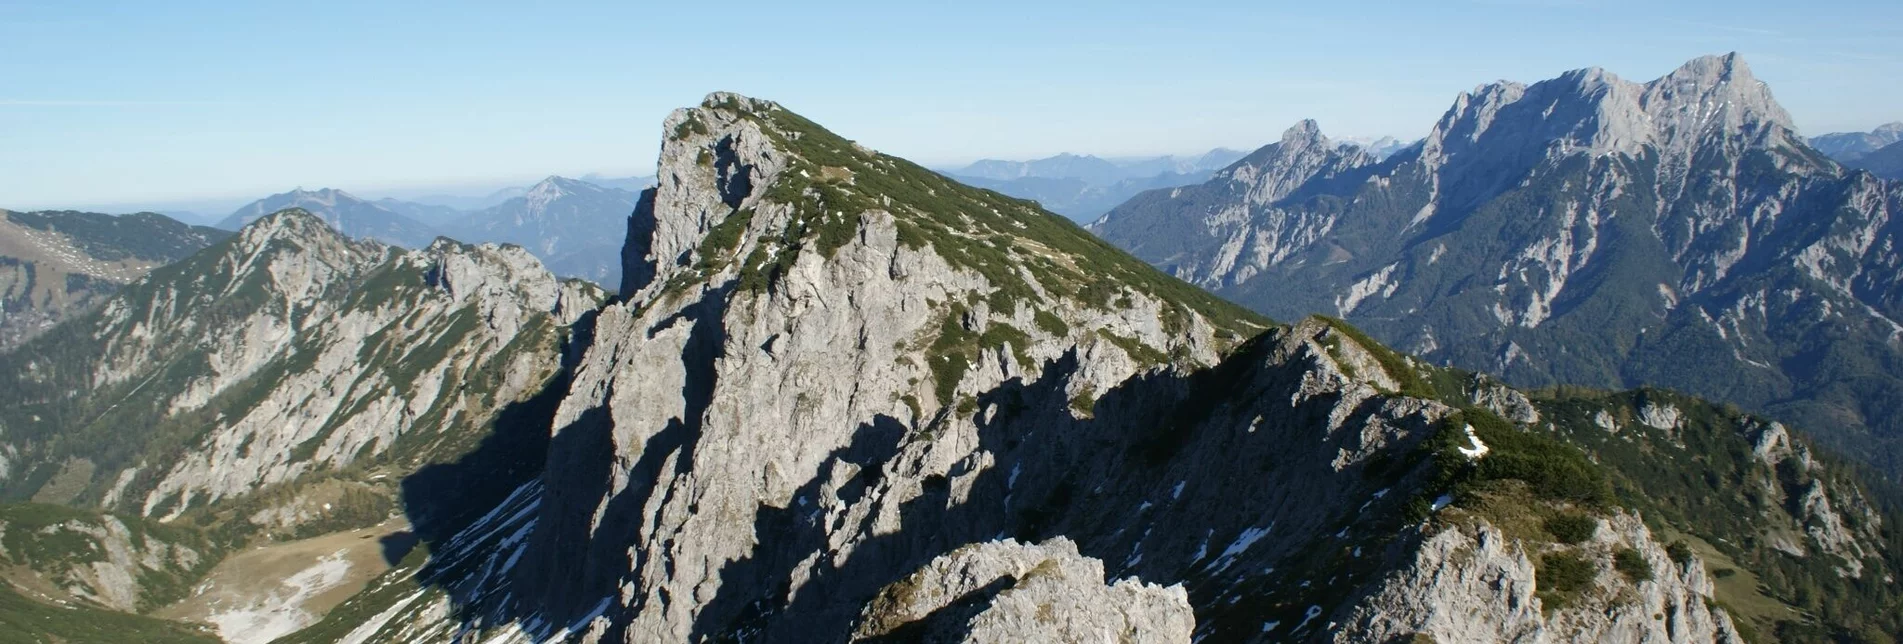 Mountain Hike Grabneralm with Grabnerstein (1848 m) - Touren-Impression #1 | © TV Gesäuse